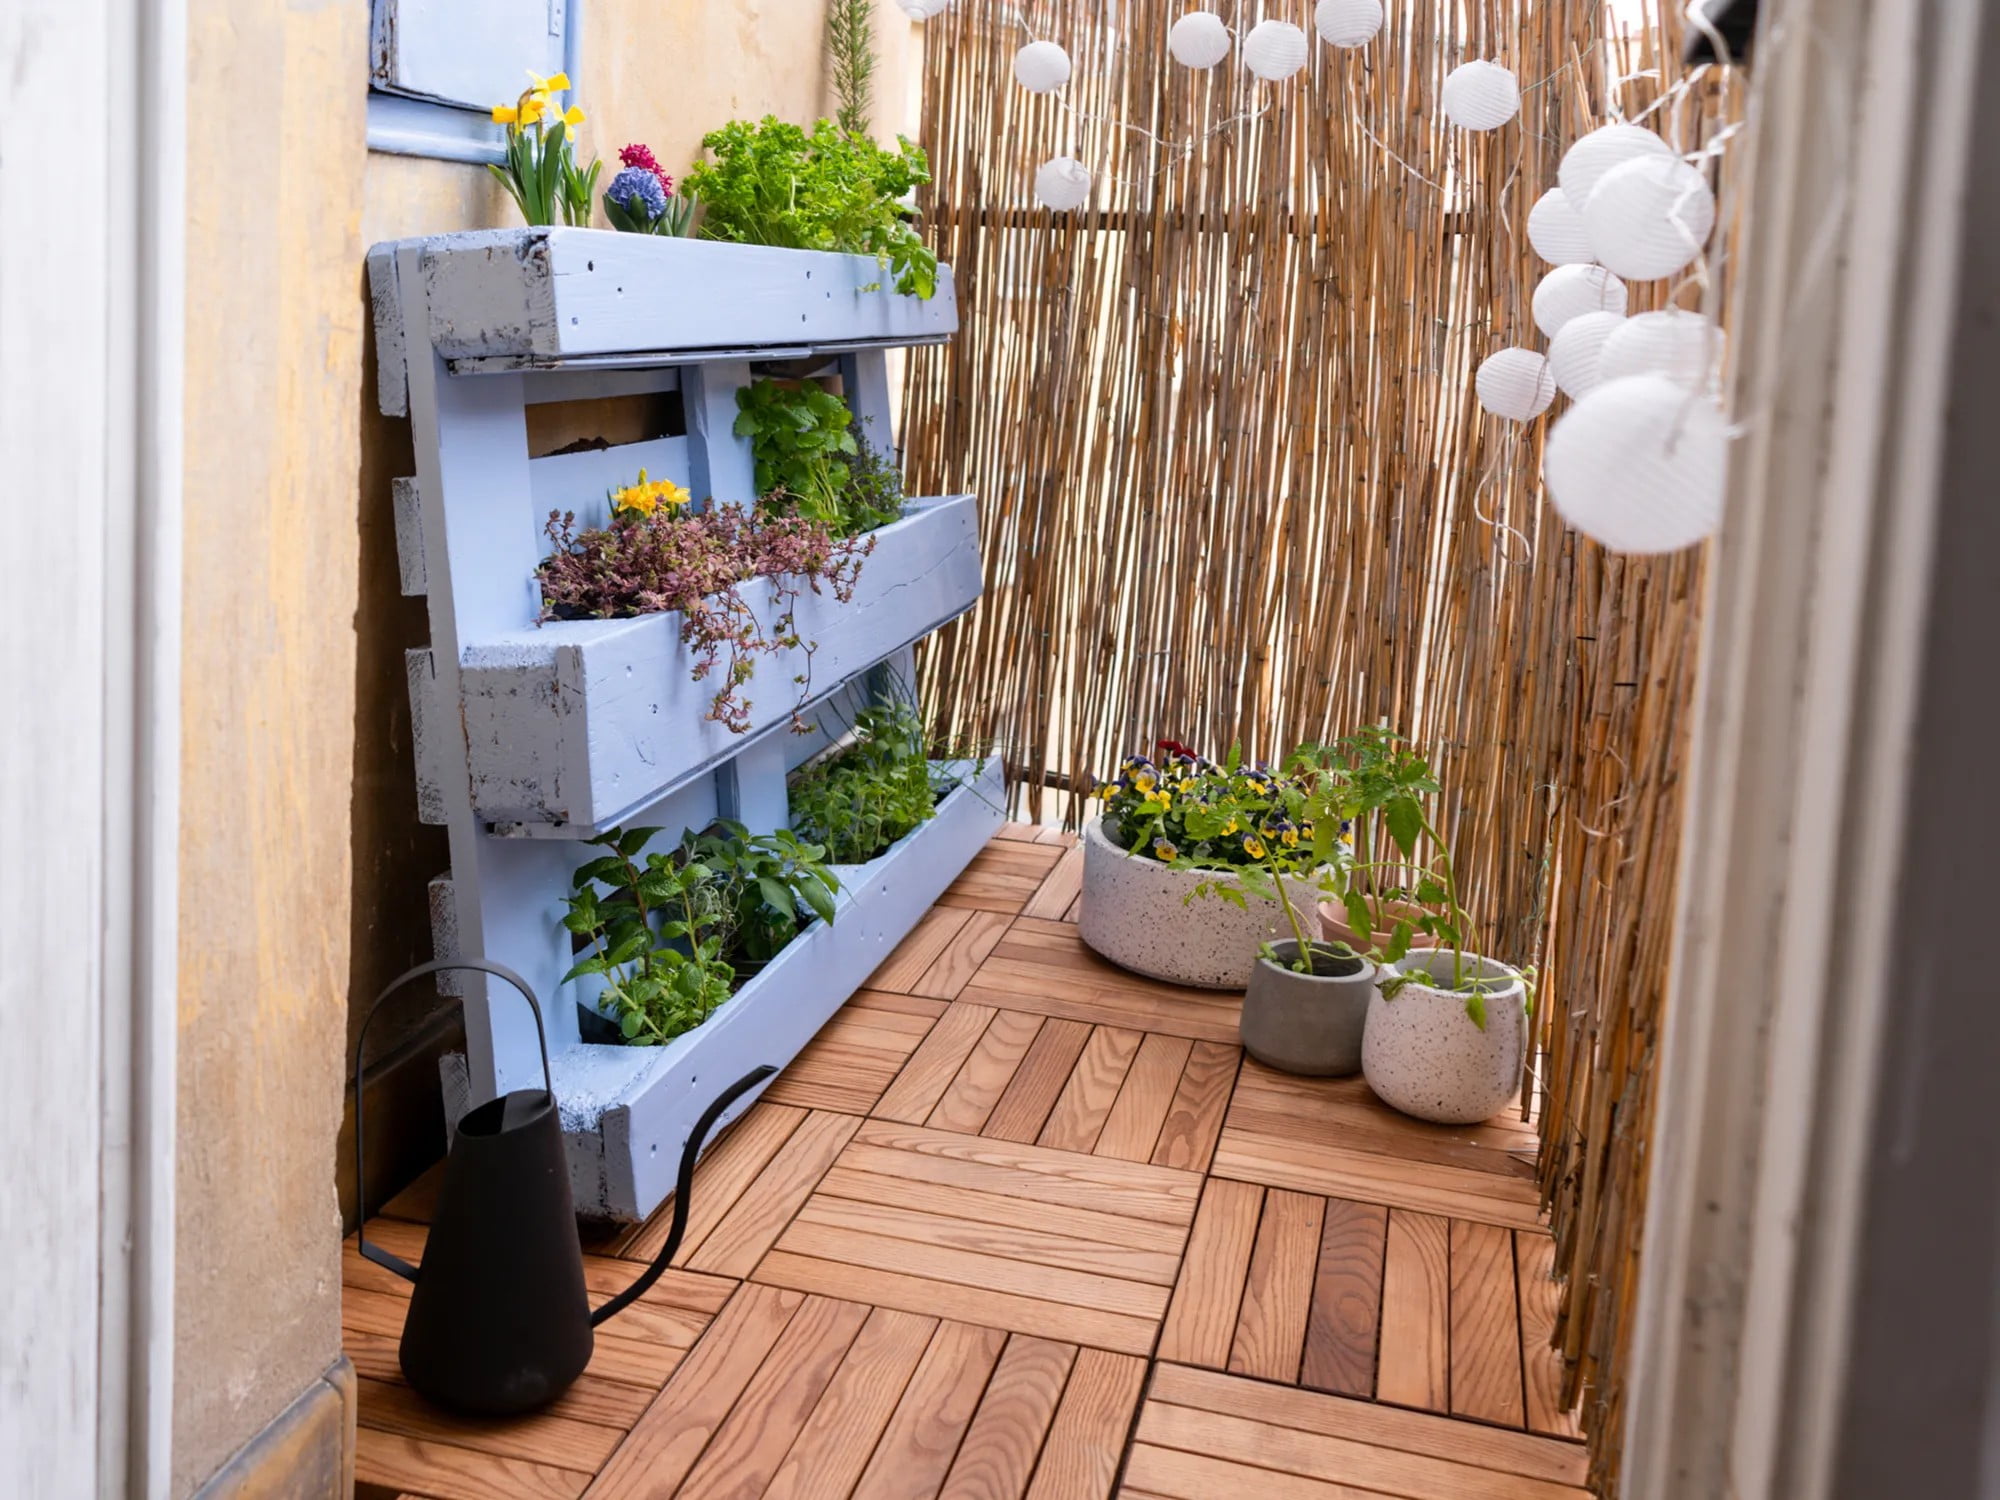 Jeśli uprawiasz zioła na balkonie, możesz zrobić dla nich praktyczny stojak z palet, aby zaoszczędzić cenną przestrzeń.